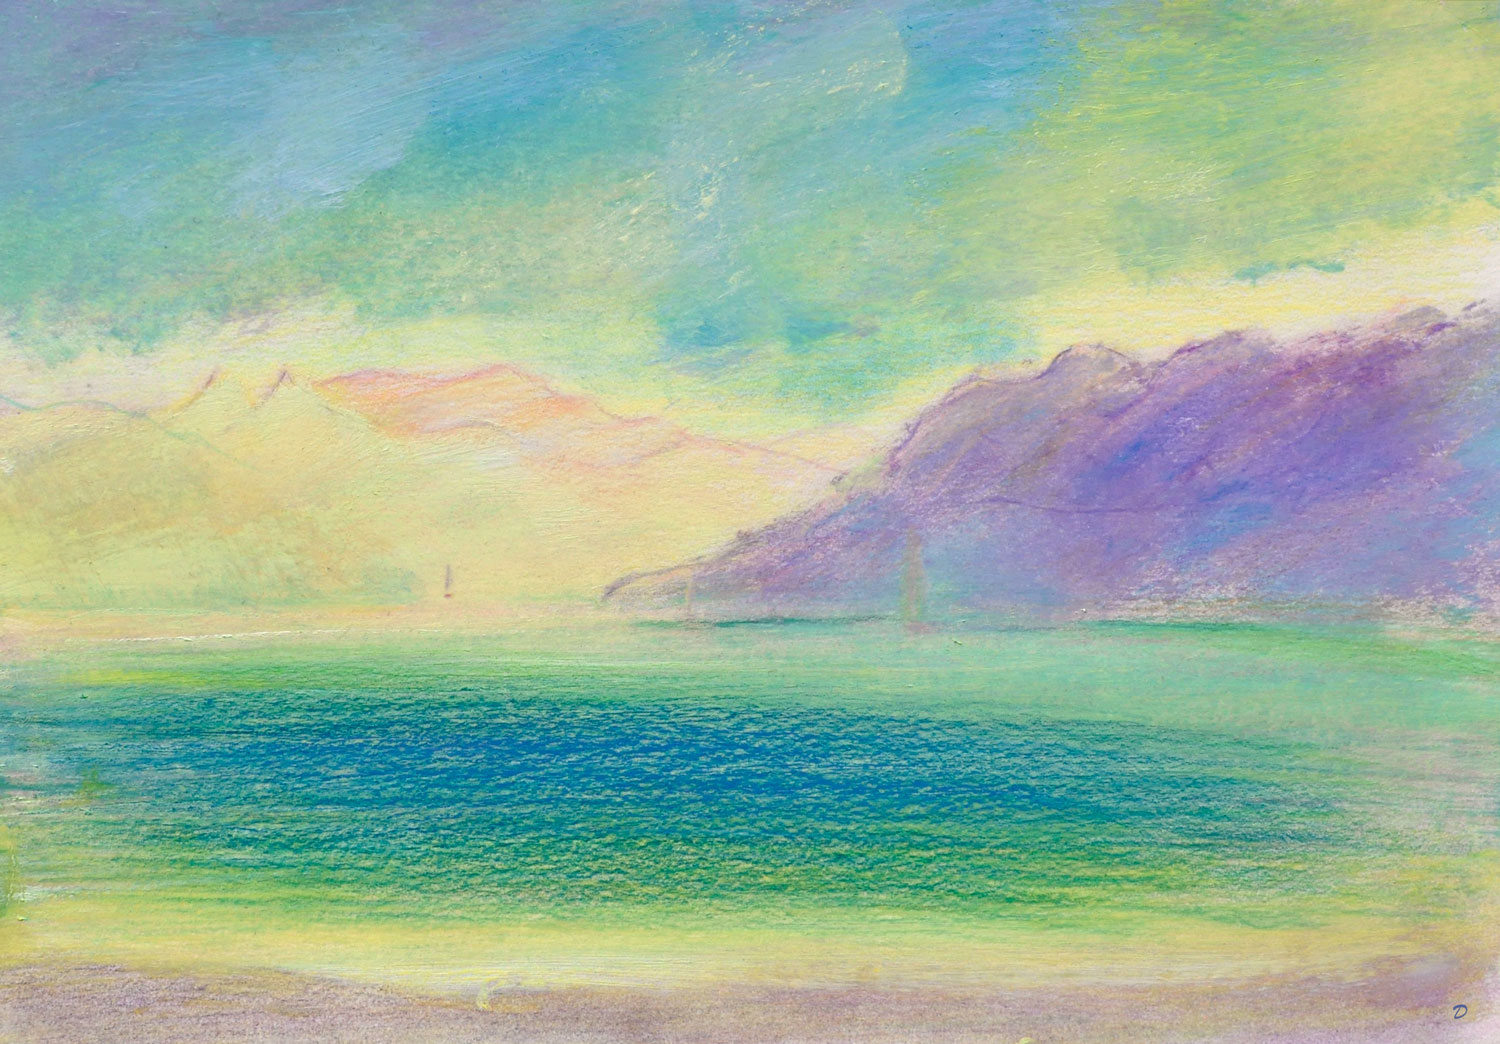 Lac Léman, St Prex, 38. Crayon de couleur, pastel et huile sur papier, 21x29, 2022